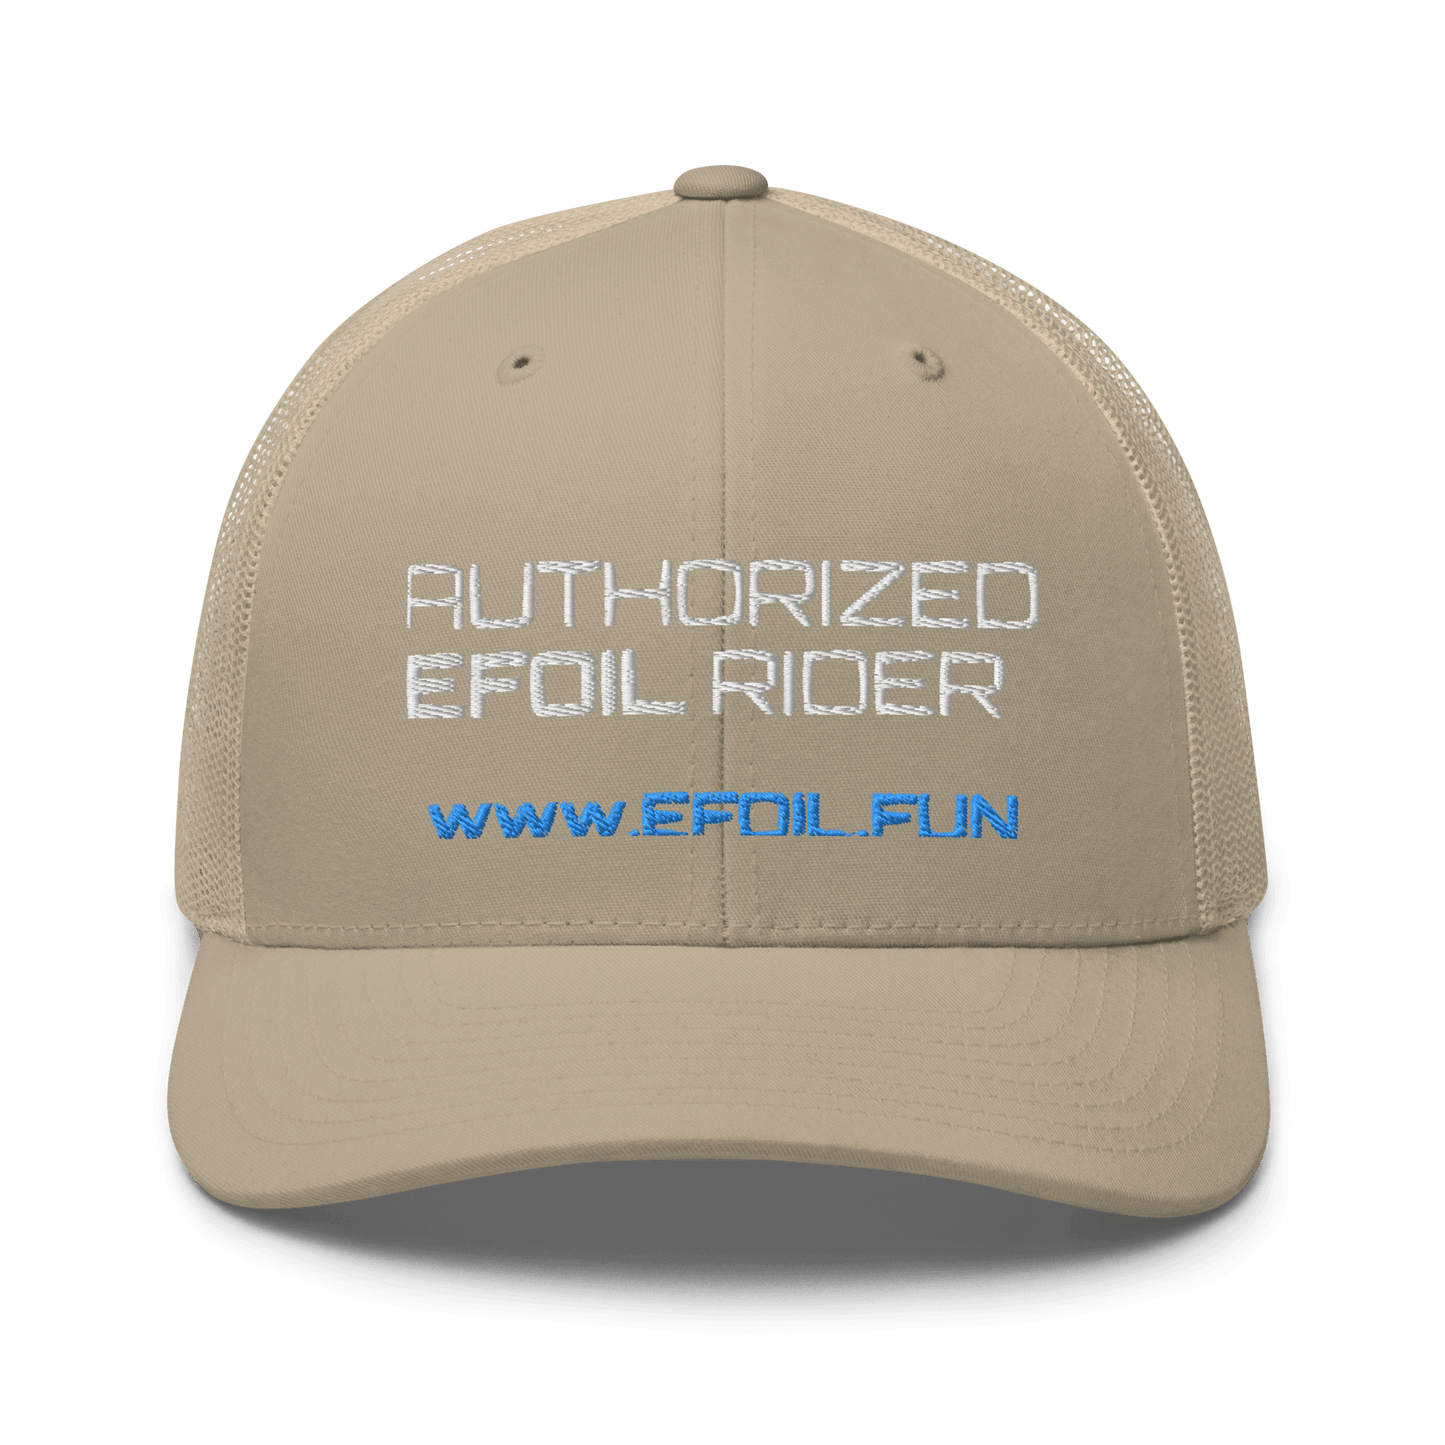 Trucker-Cap - shop.efoil.fun